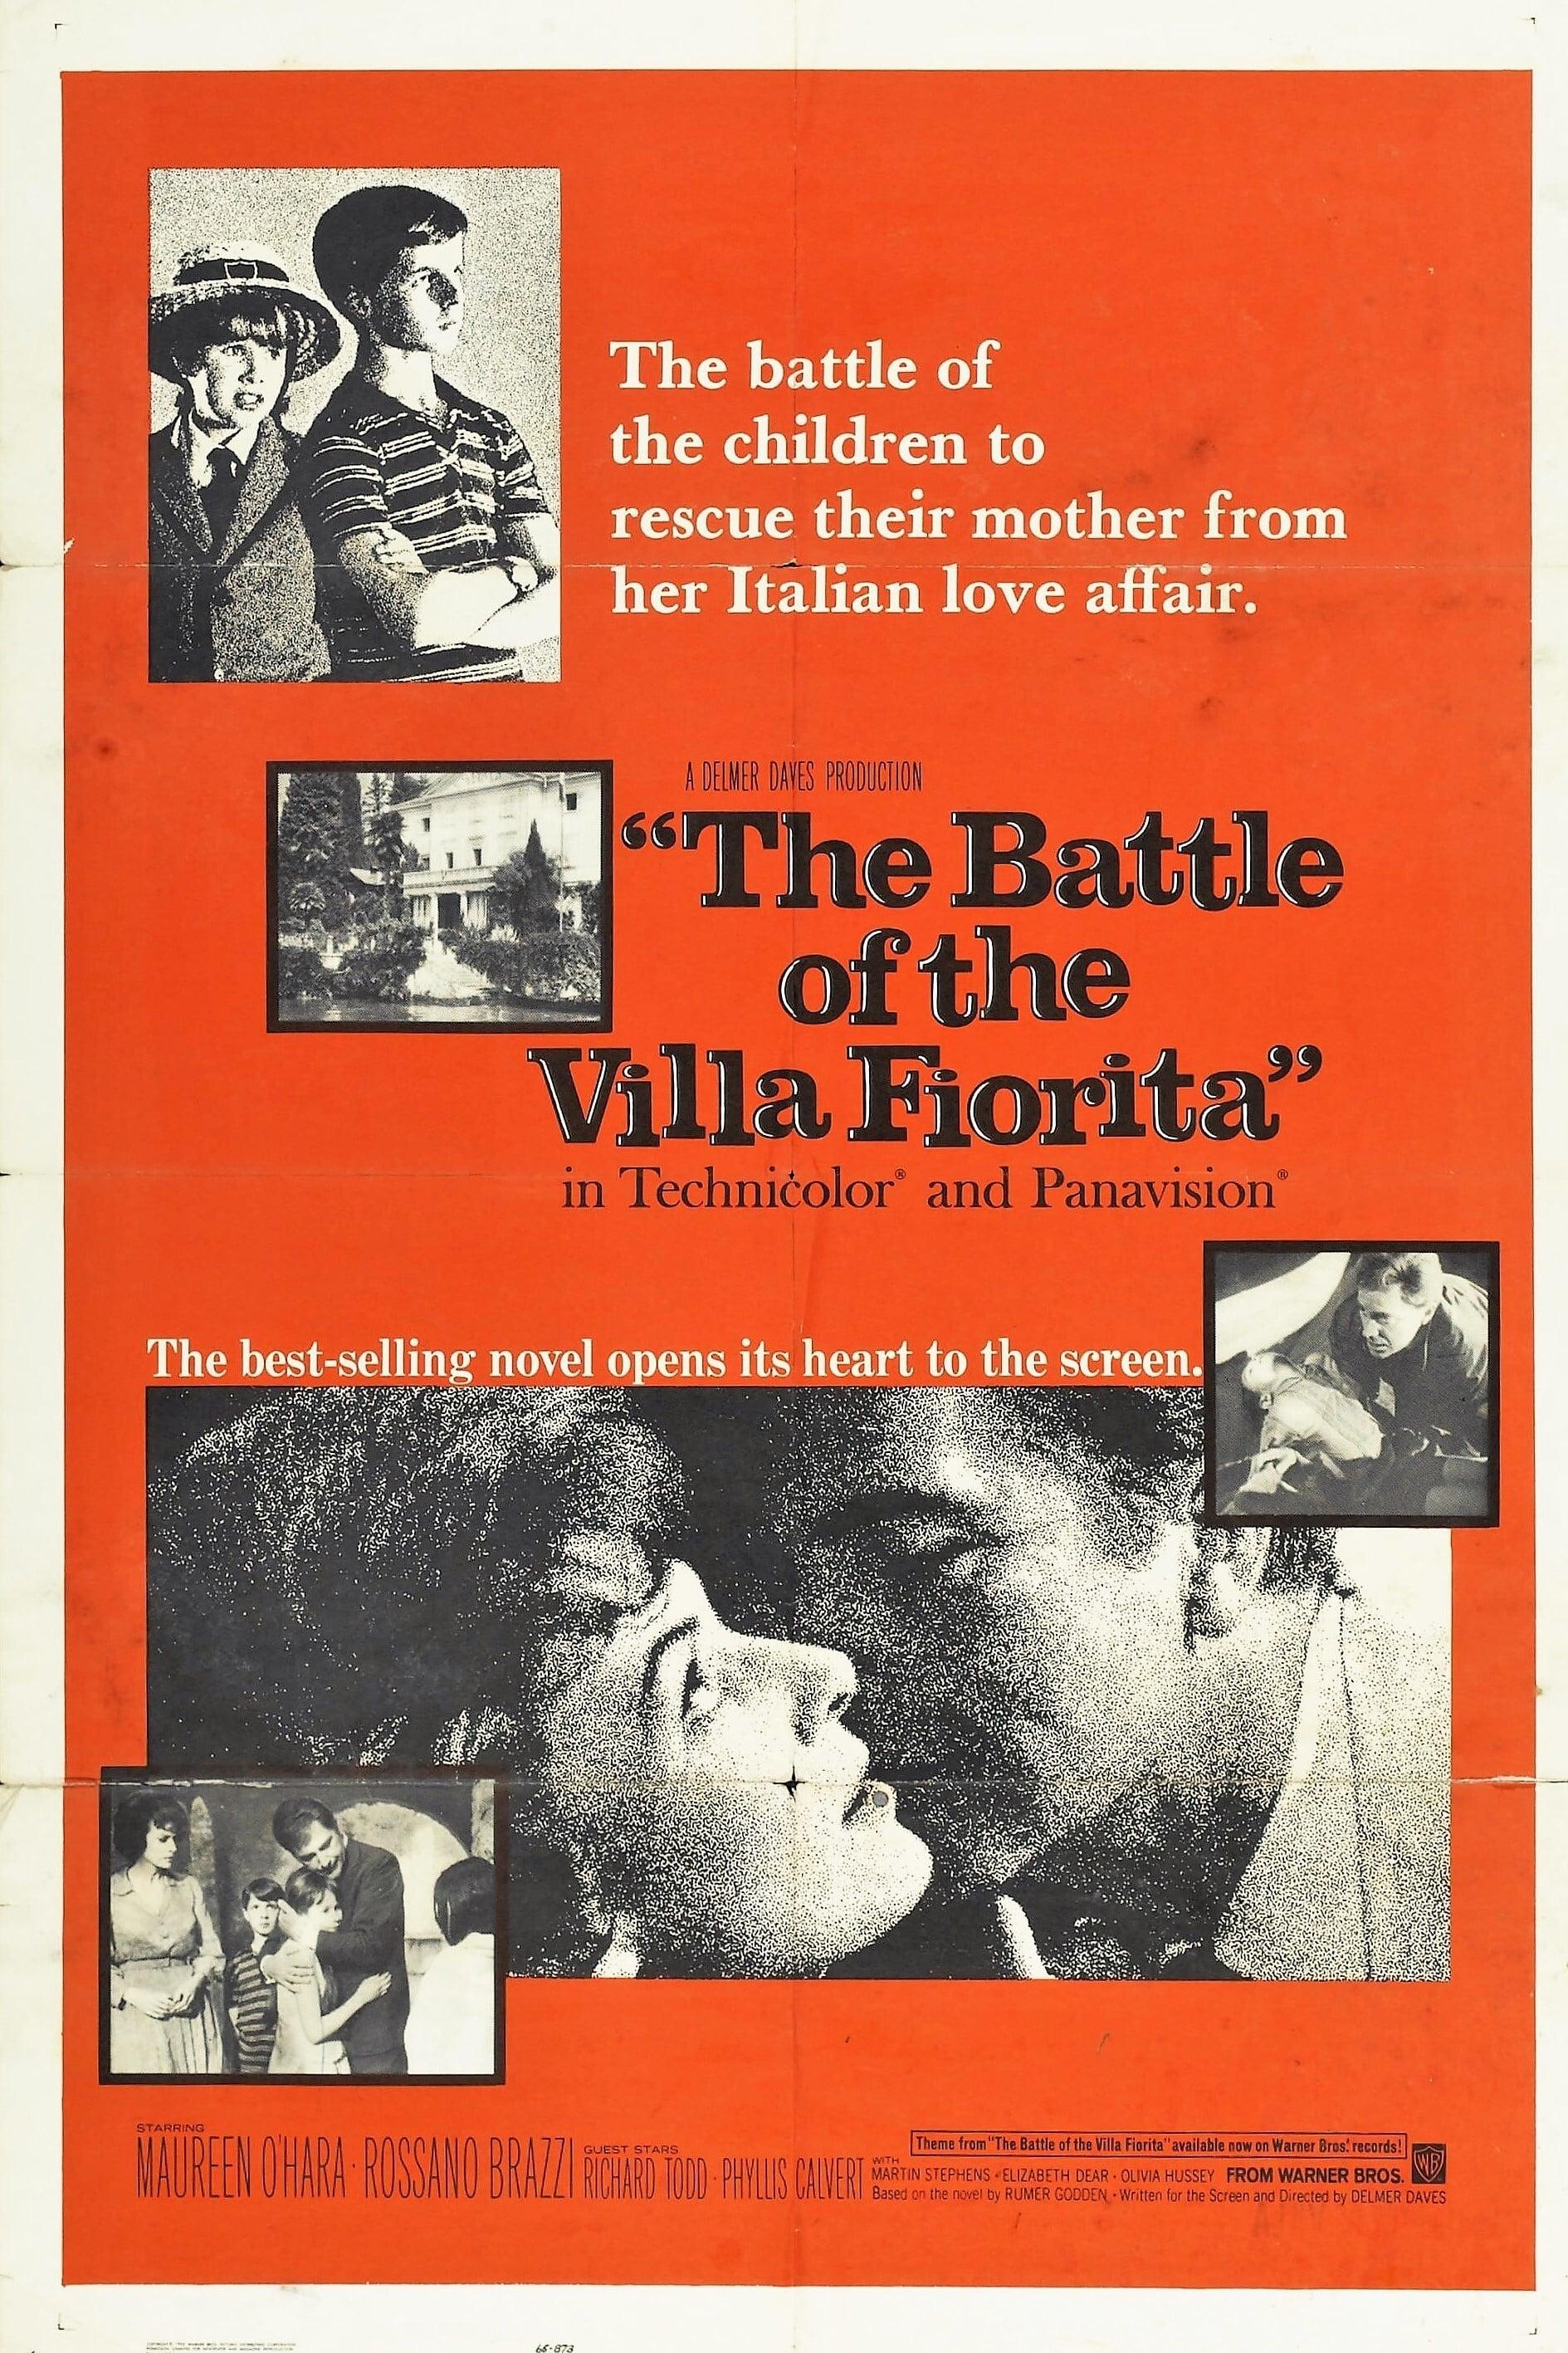 The Battle of the Villa Fiorita poster